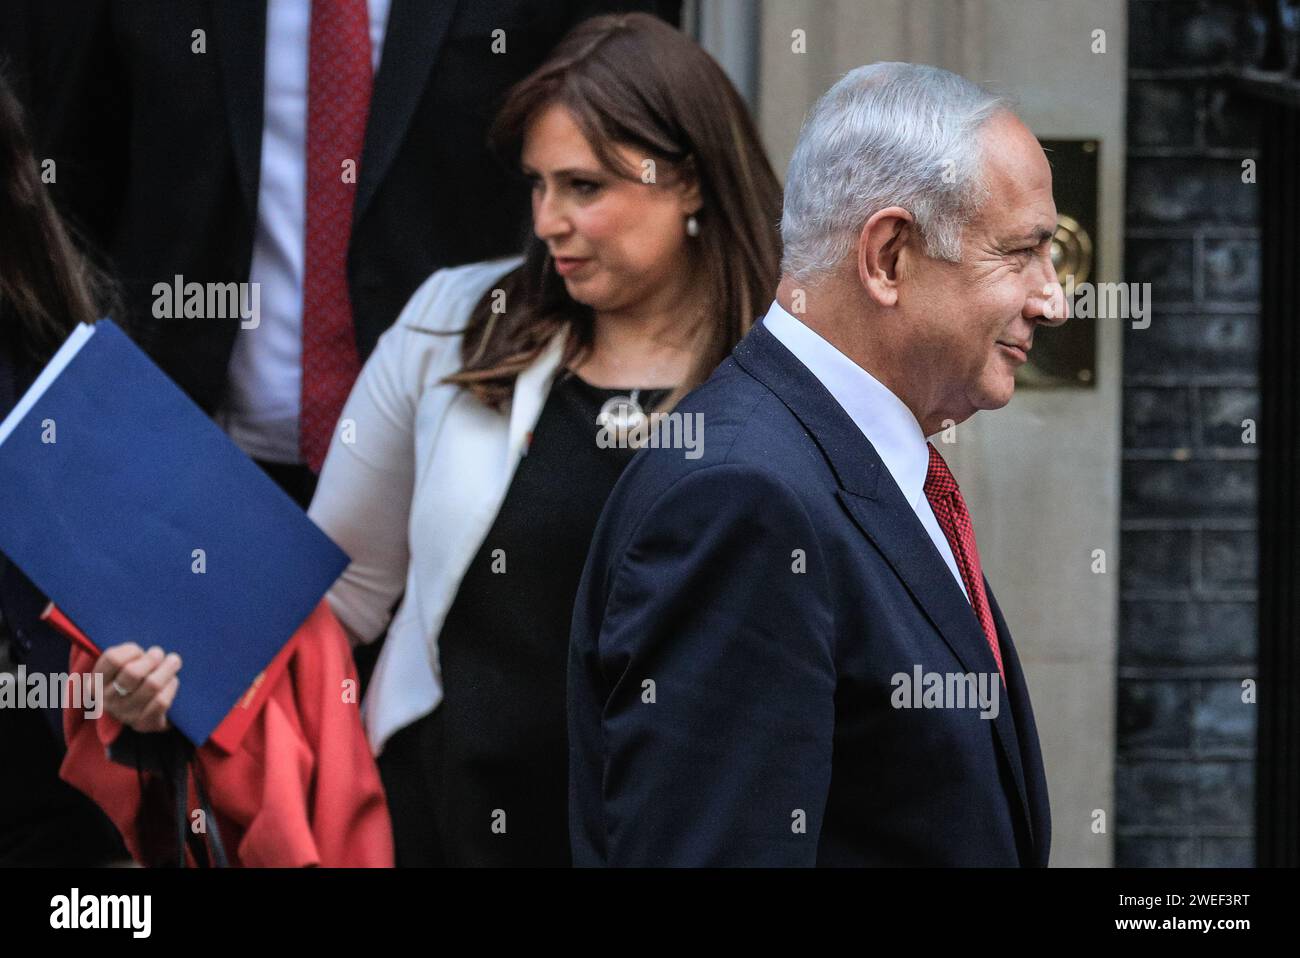 Benjamin Netanyahu, Premier ministre israélien, Ambassadeur Tzipi Hotovely (derrière) visite au Royaume-Uni, Londres, Royaume-Uni Banque D'Images